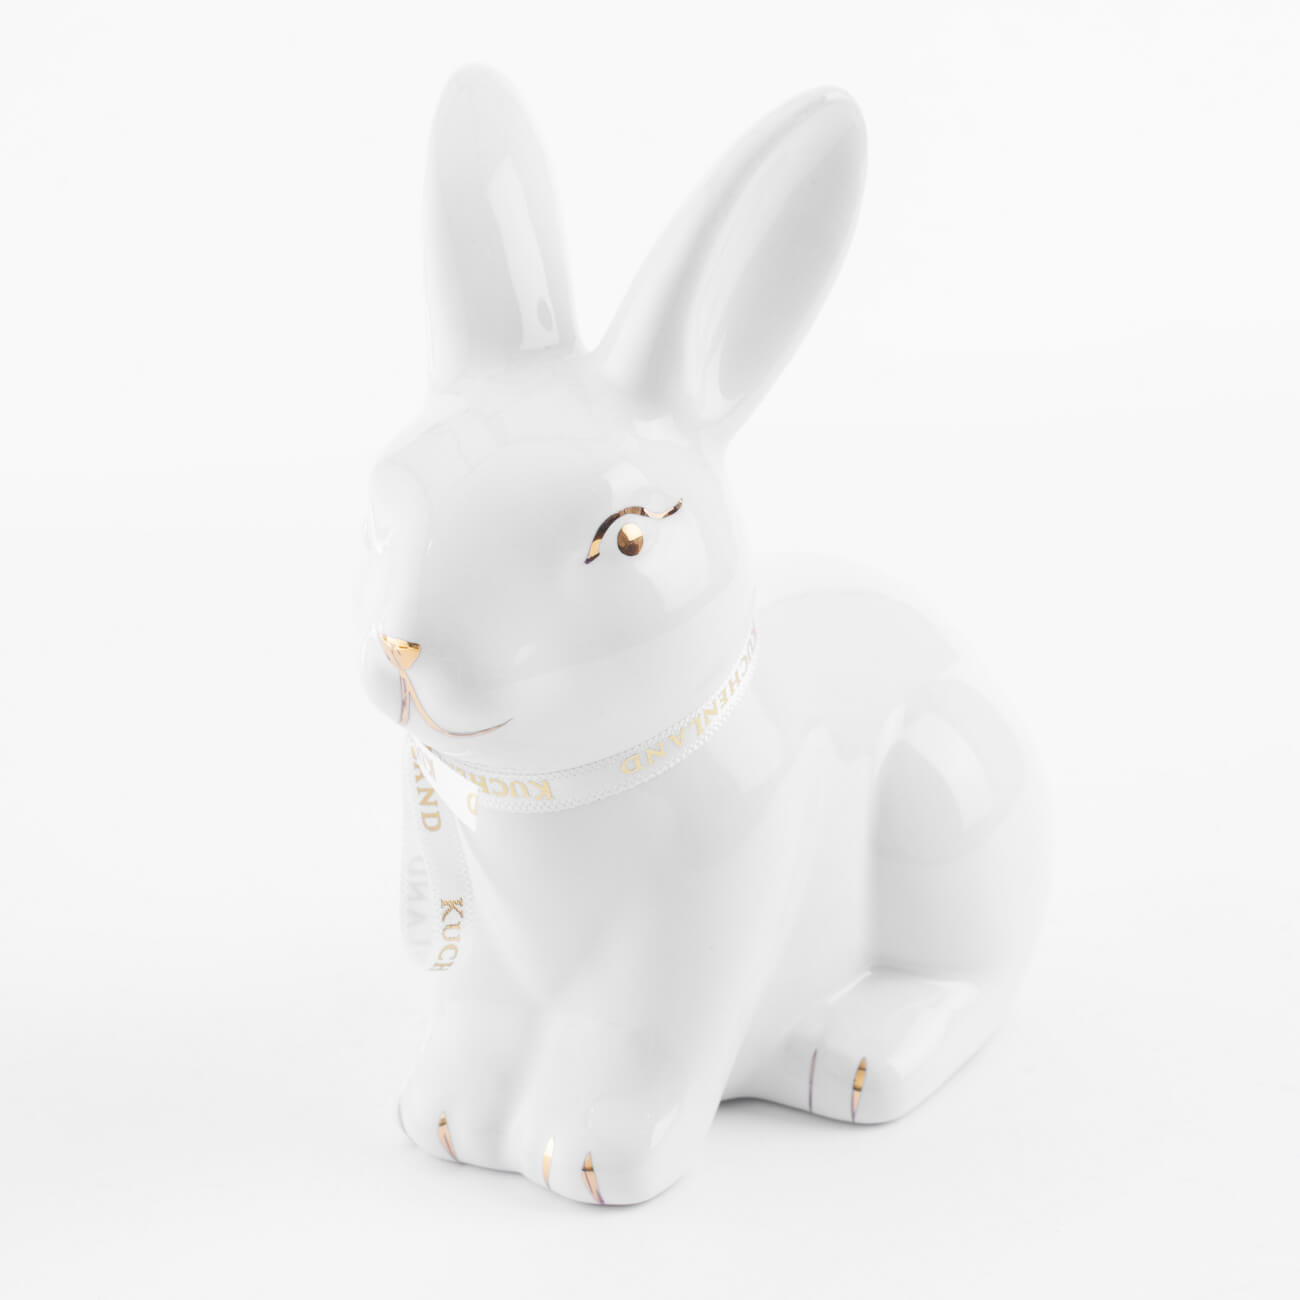 Статуэтка, 13 см, керамика, бело-золотистая, Кролик сидит, Easter gold статуэтка 13 см полирезин бело золотистая кролик с очным ожерельем easter gold